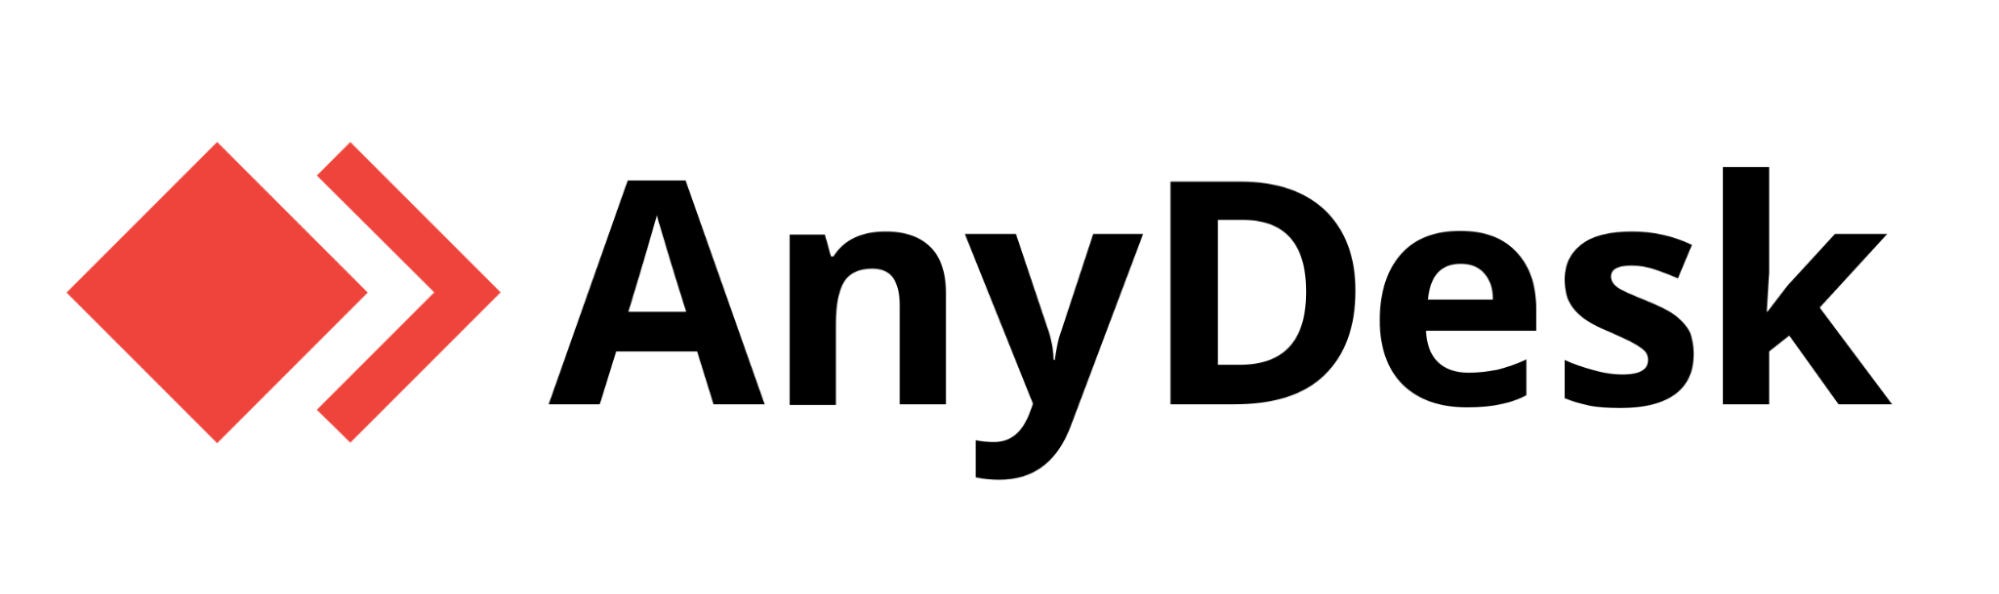 Logo do Anydesk com um losango vermelho a esquerda e o nome escrito em cor preta